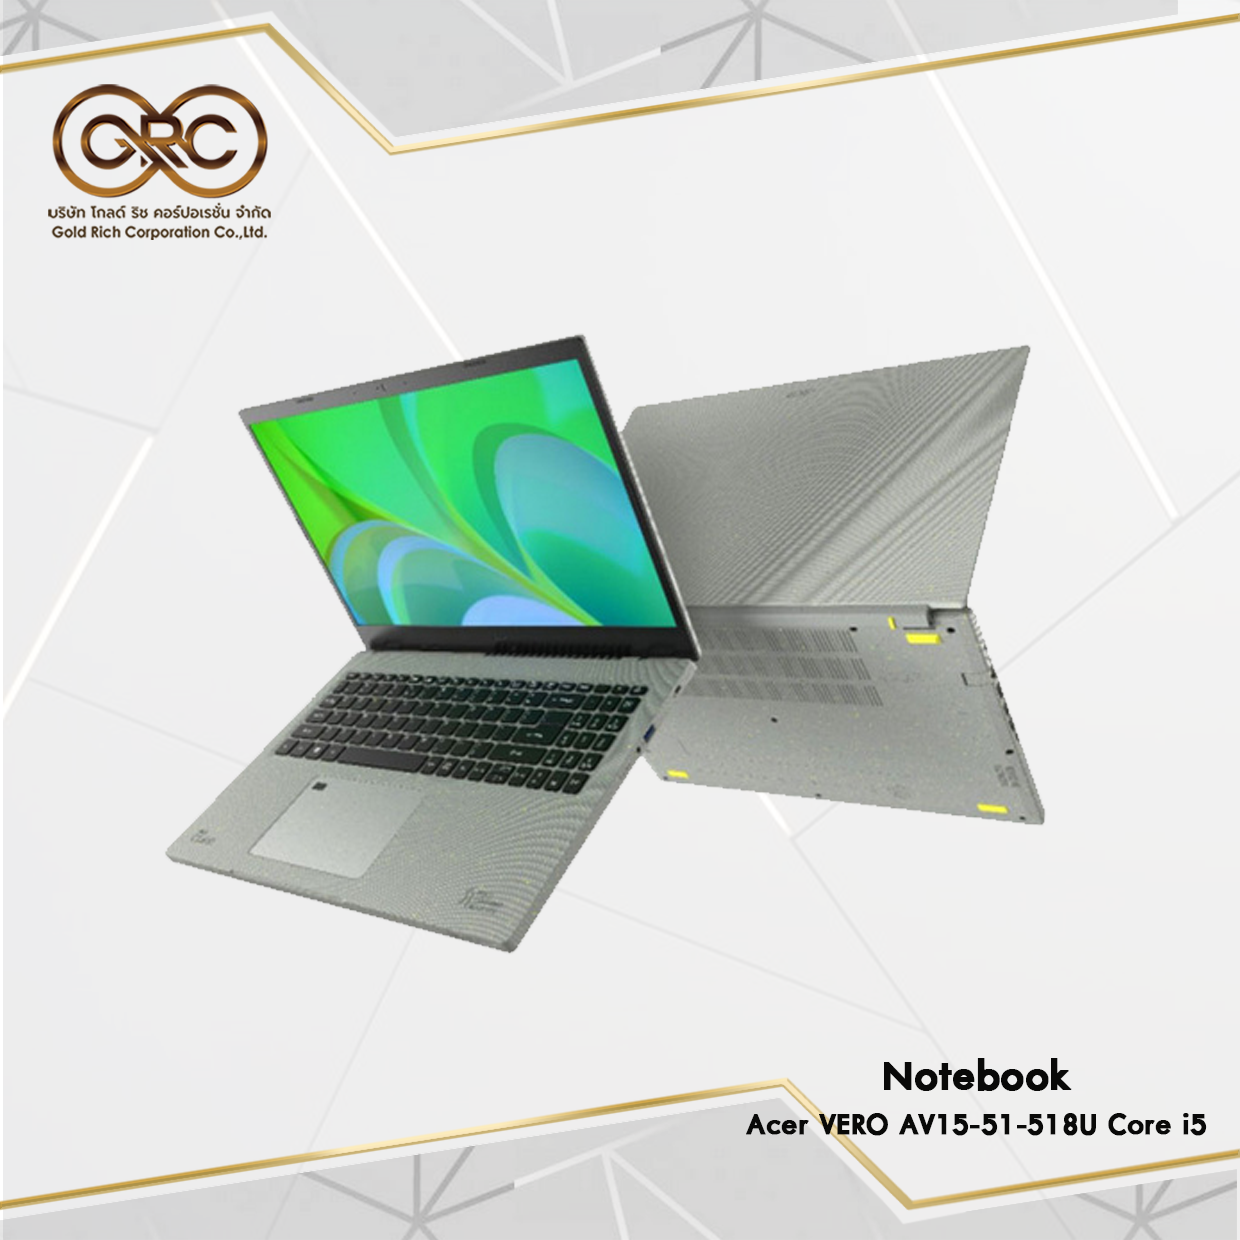 โน้ตบุ๊ค Acer VERO AV15-51-518U Core i5